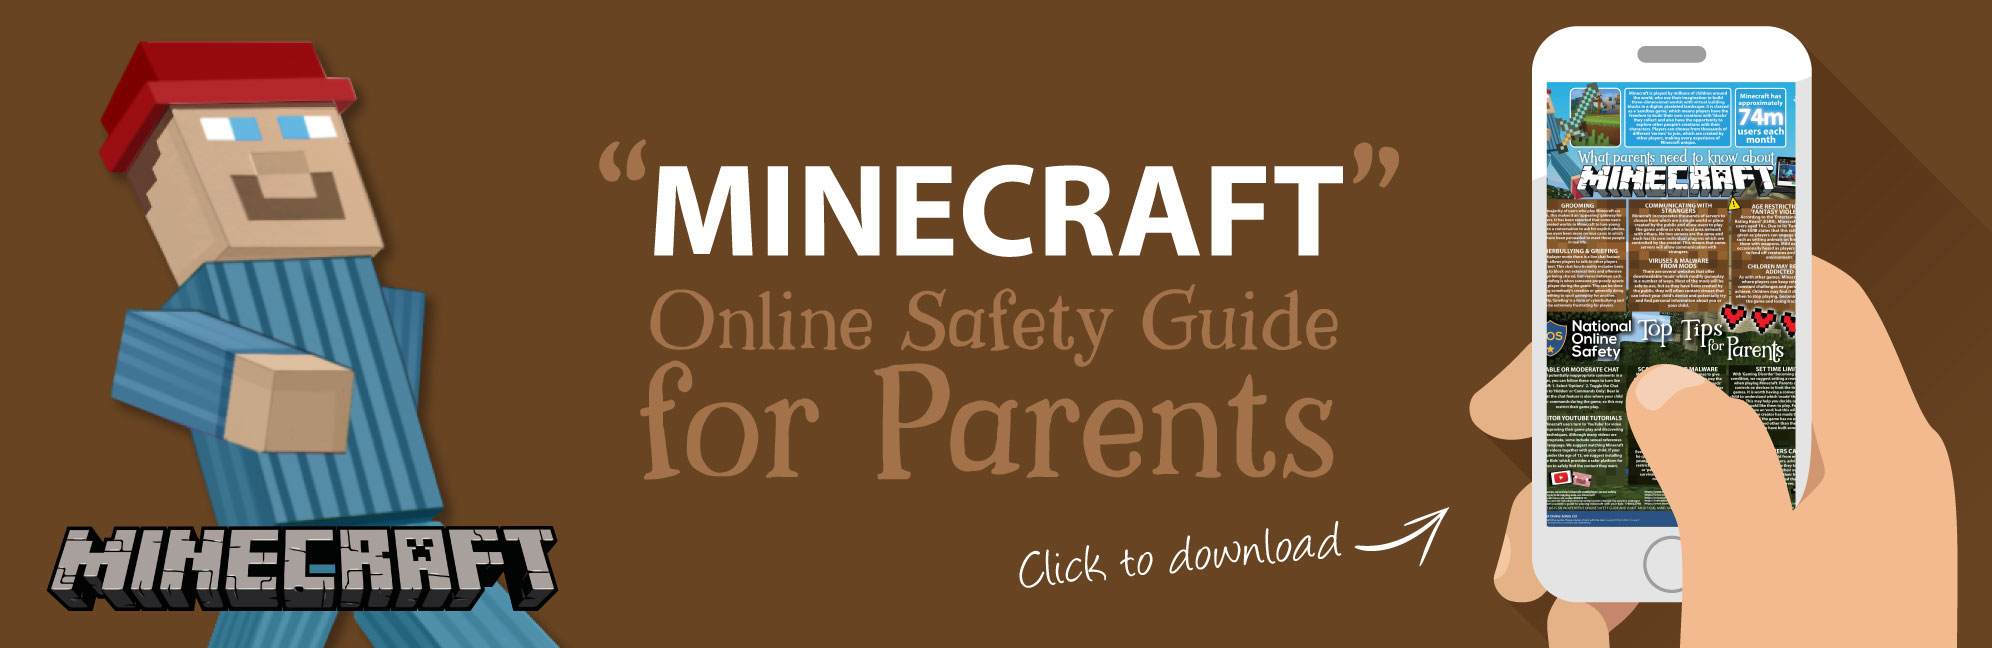 Minecraft-Online-Safety-Parents-Guide-Web-Image-121118-V1